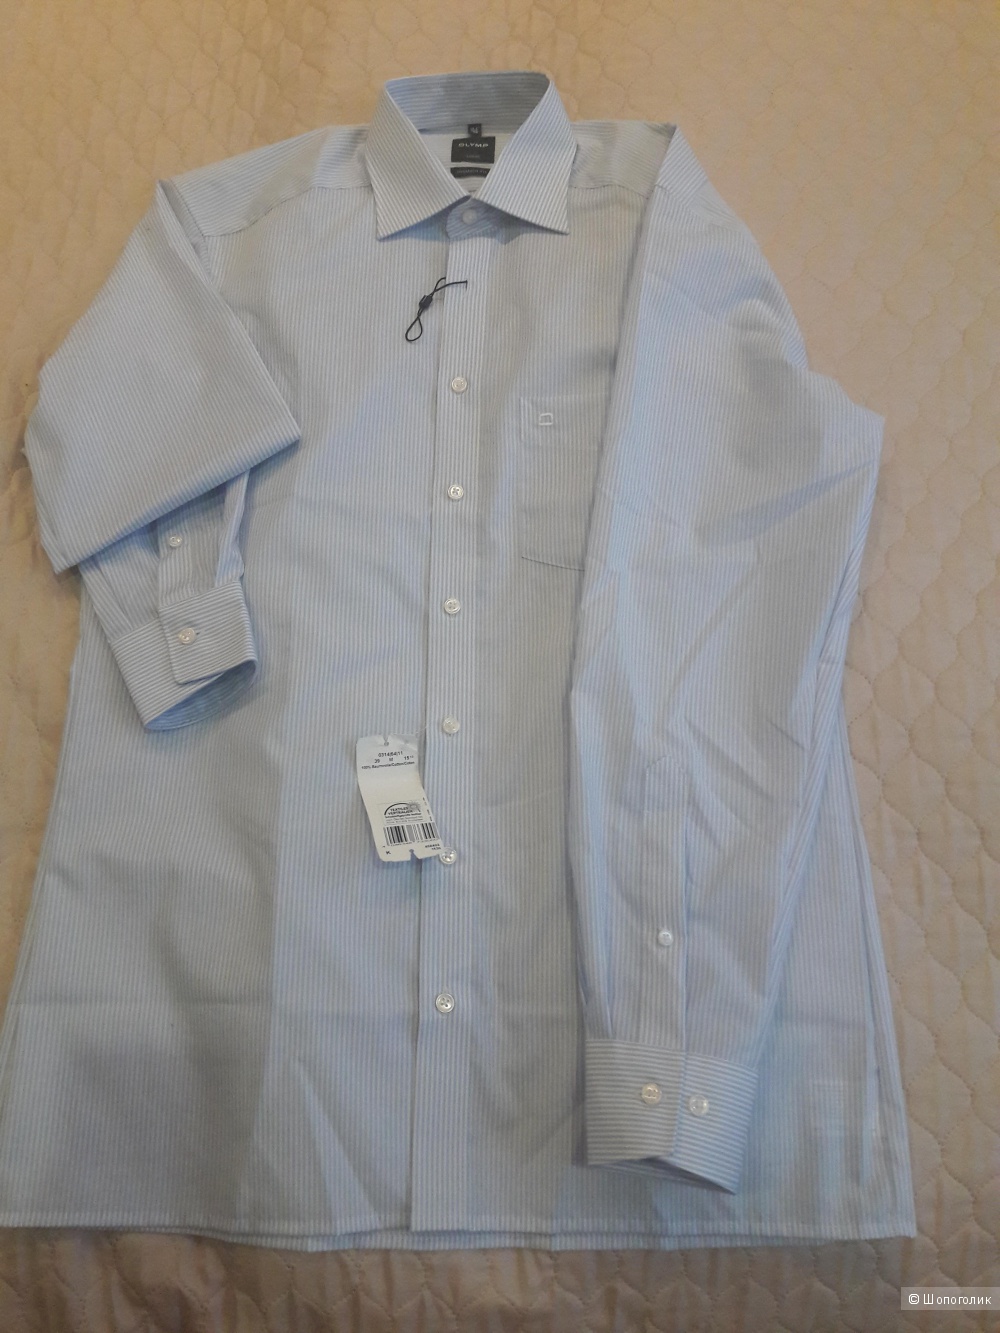 Мужская рубашка Olymp Luxor 39 15 3/4 размера